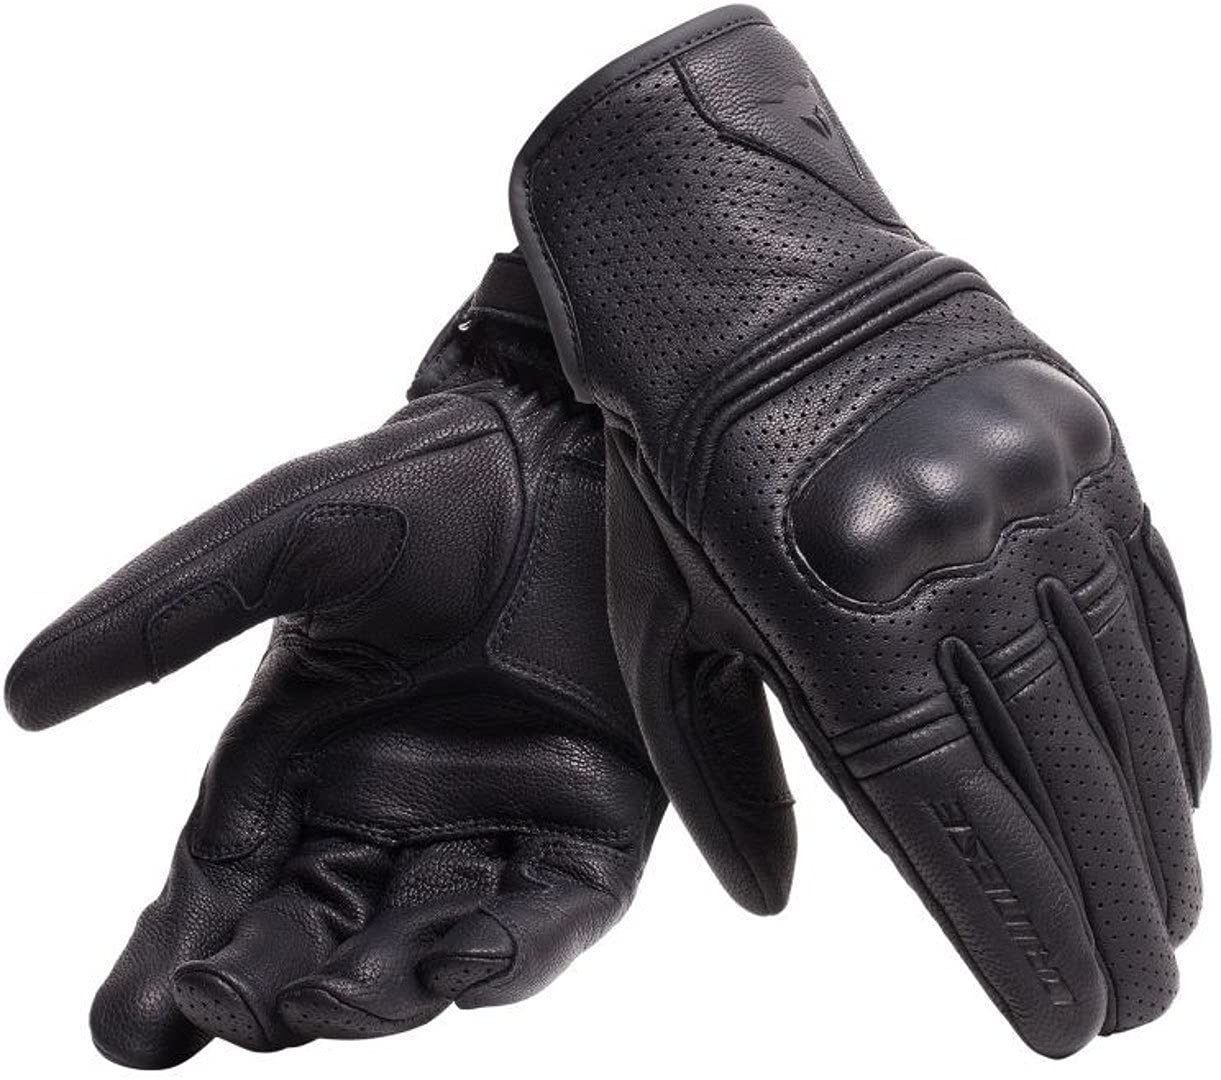 Dainese - Corbin Air Unisex Gloves, Motorradhandschuhe Herren und Damen, Handschuhe Moto aus 100% Schafsleder, Weich, Widerstandsfähig mit Knöchelschutz und Verstärkter Handfläche, Schwarz von Dainese